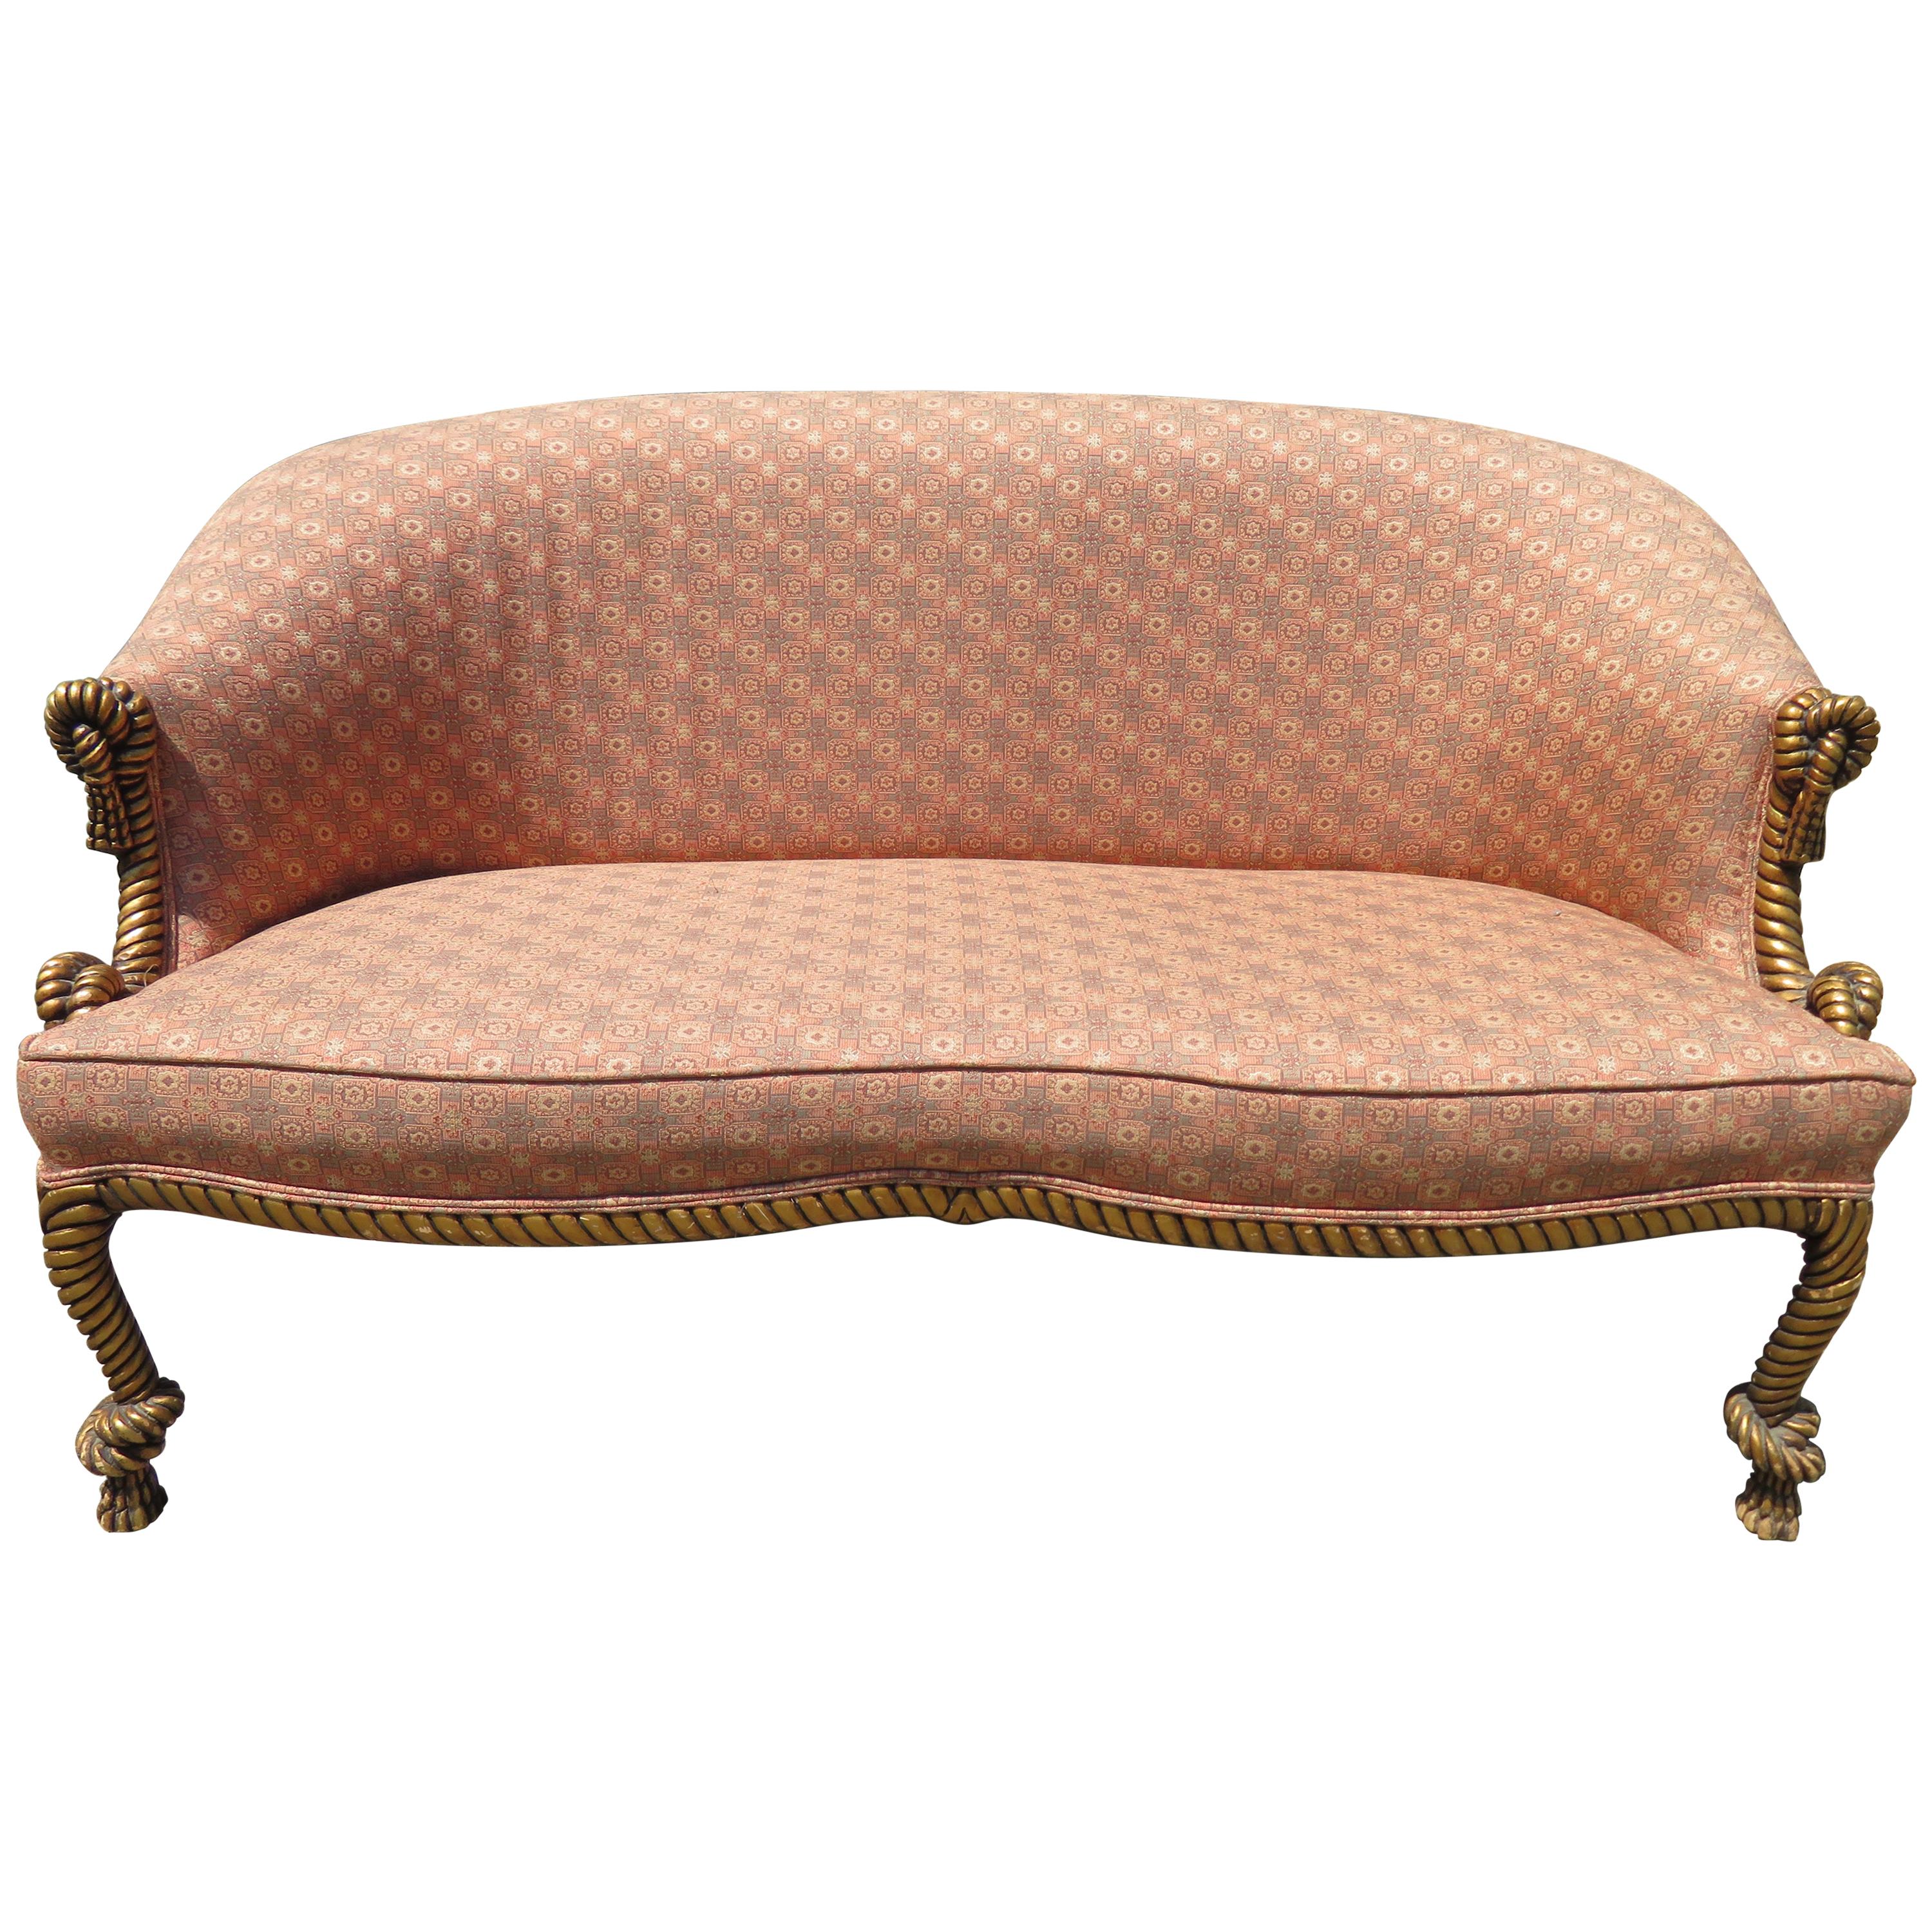 Prächtiges Sofa mit Seil und Quasten vergoldet Regency Modern Dorothy Draper Style